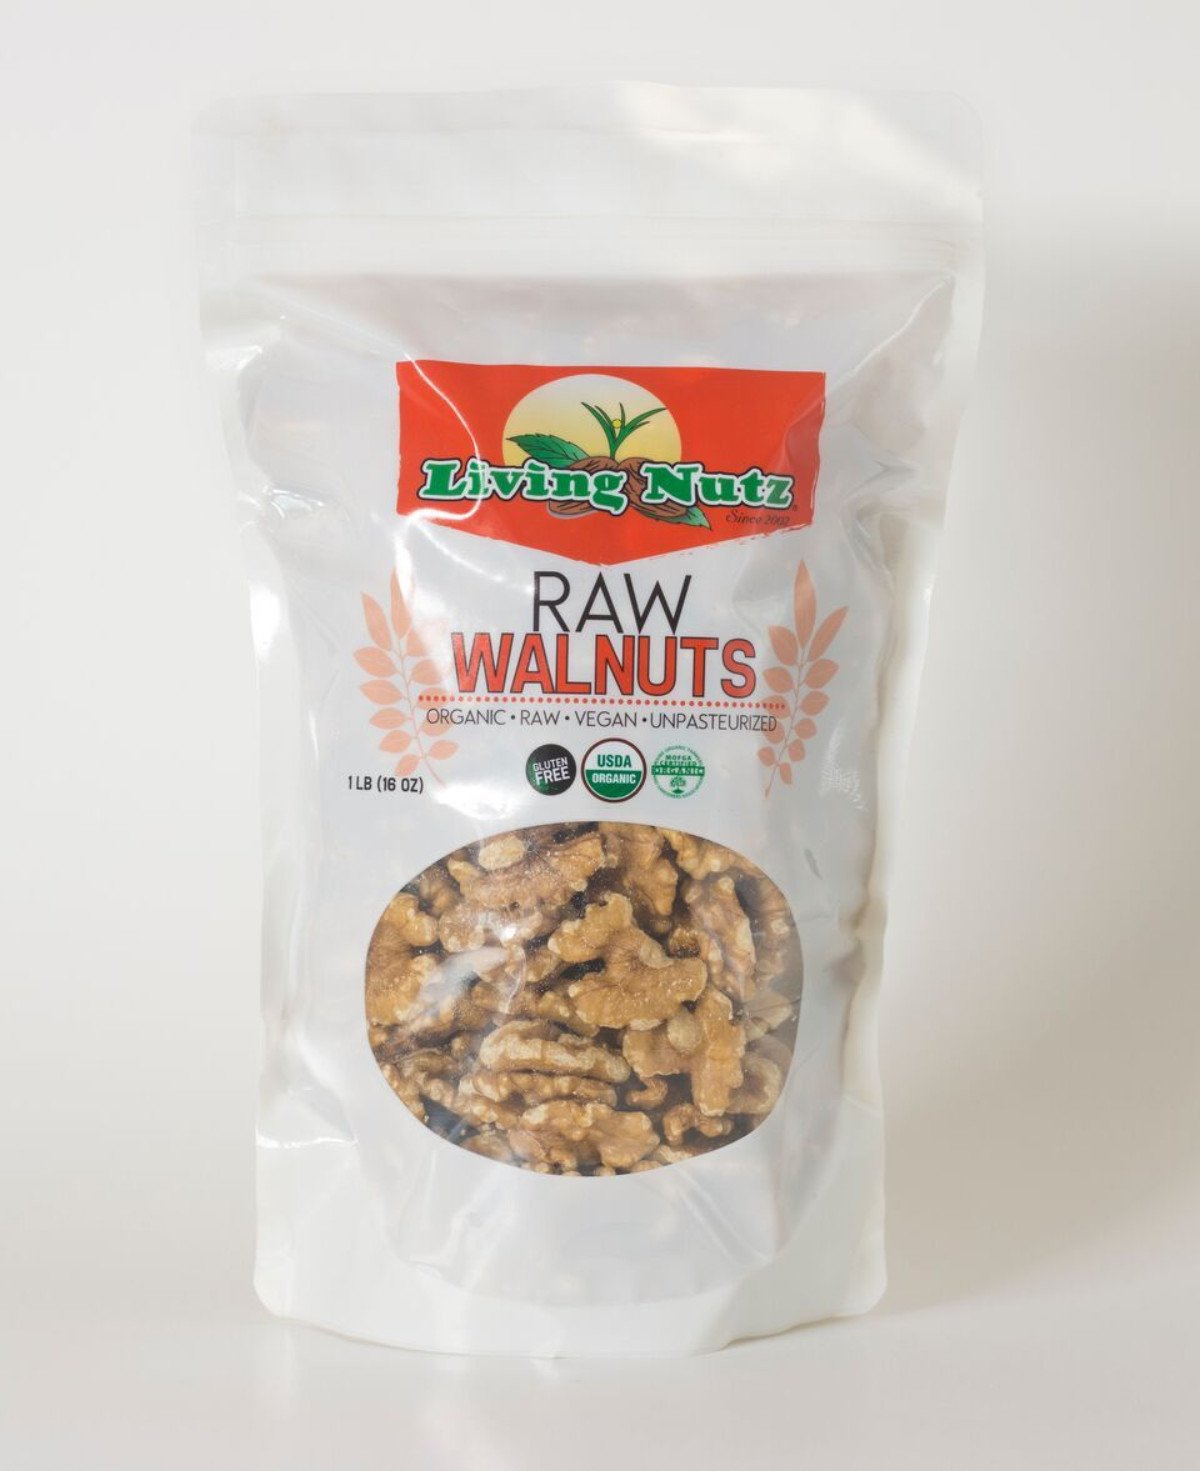 Raw organic walnuts. Fresh walnuts, Walnuts offer many health benefits. Healthy nuts